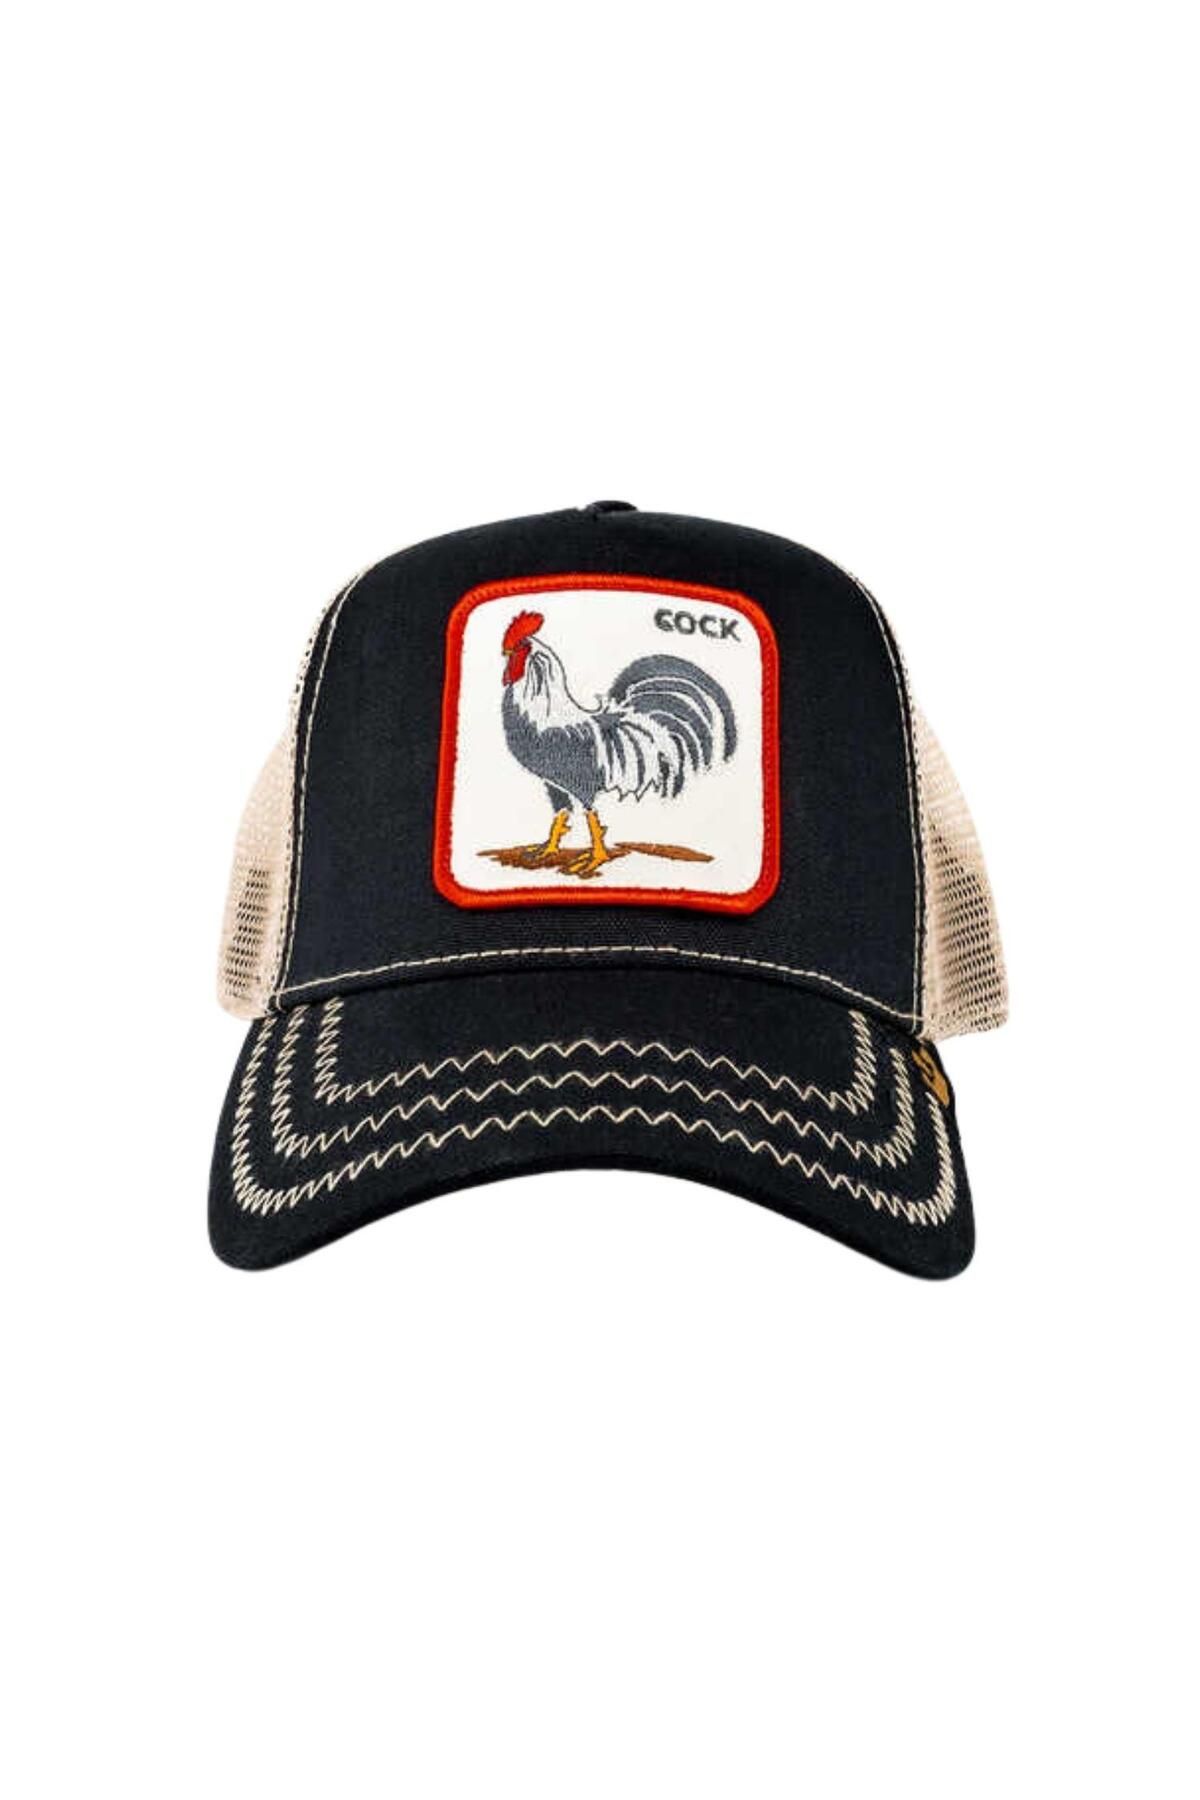 Goorin Bros The Cock (HOROZ FİGÜRLÜ) Şapka